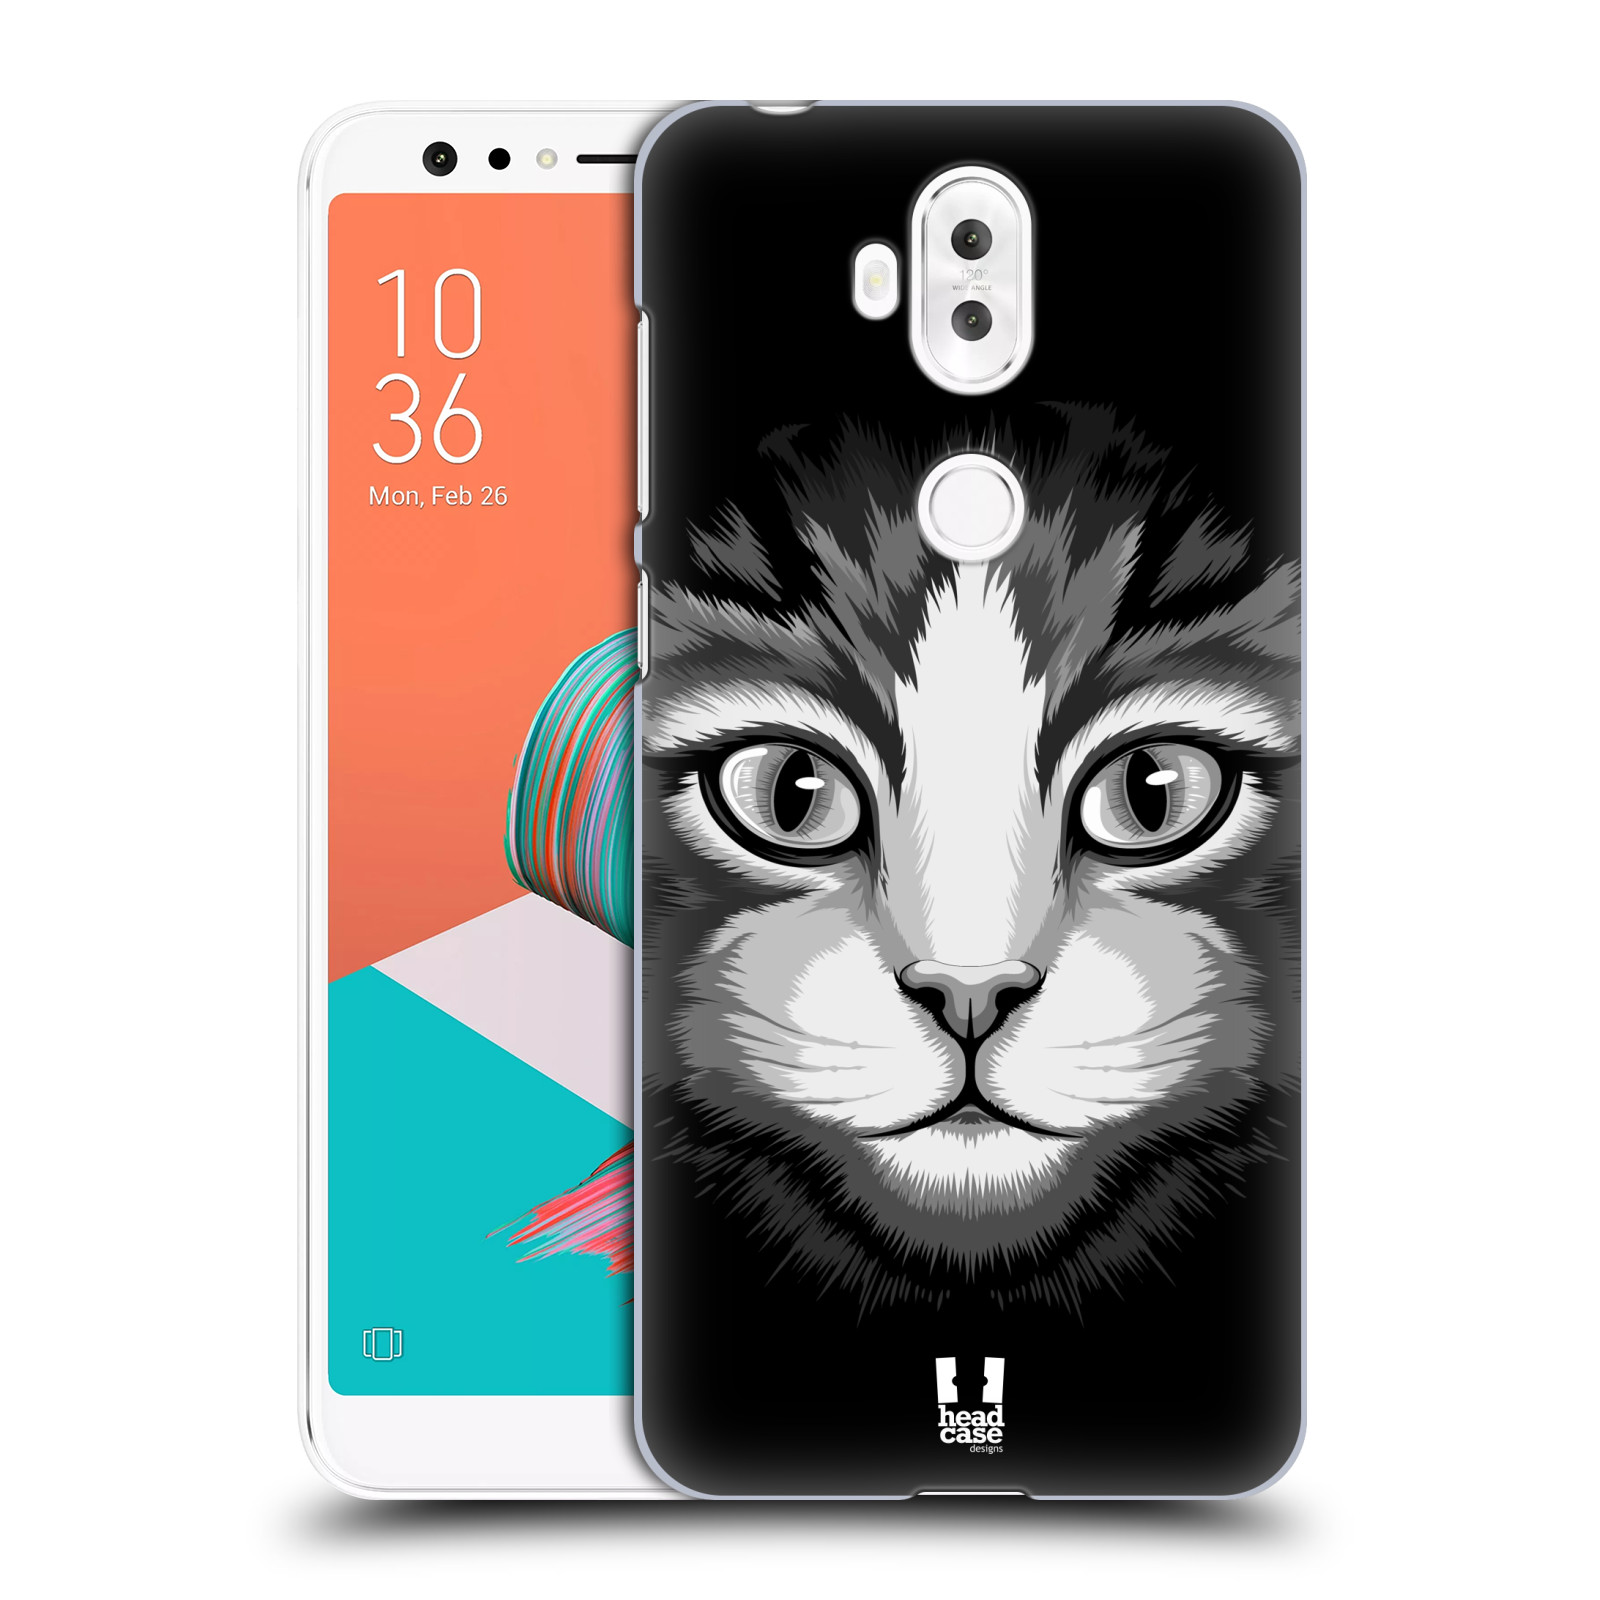 HEAD CASE plastový obal na mobil Asus Zenfone 5 LITE ZC600KL vzor Zvíře kreslená tvář 2 kočička